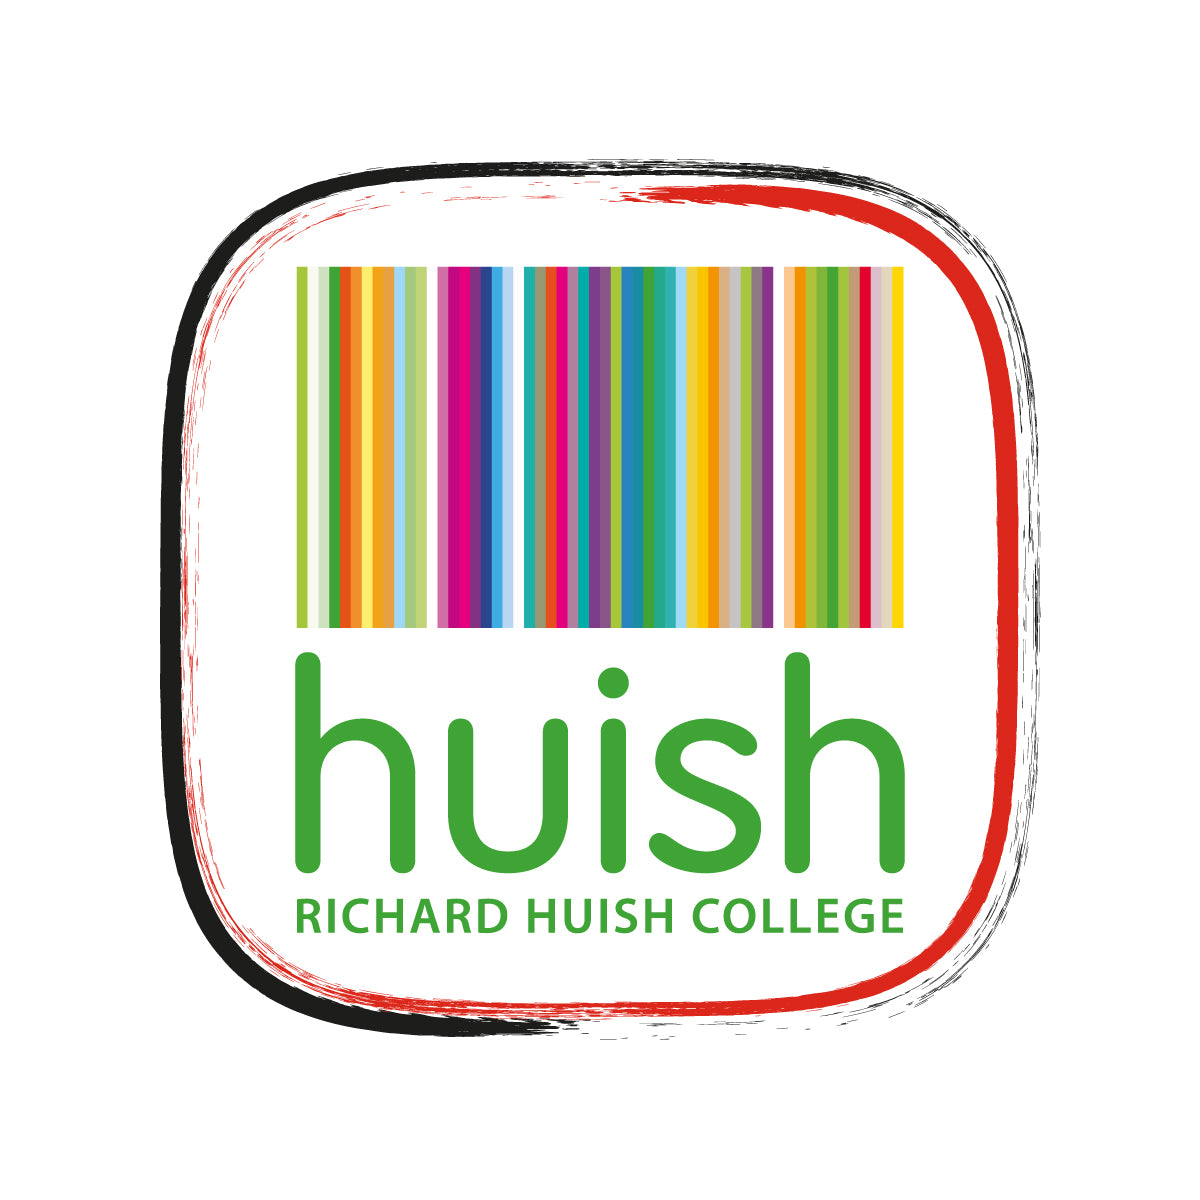 Richard Huish College